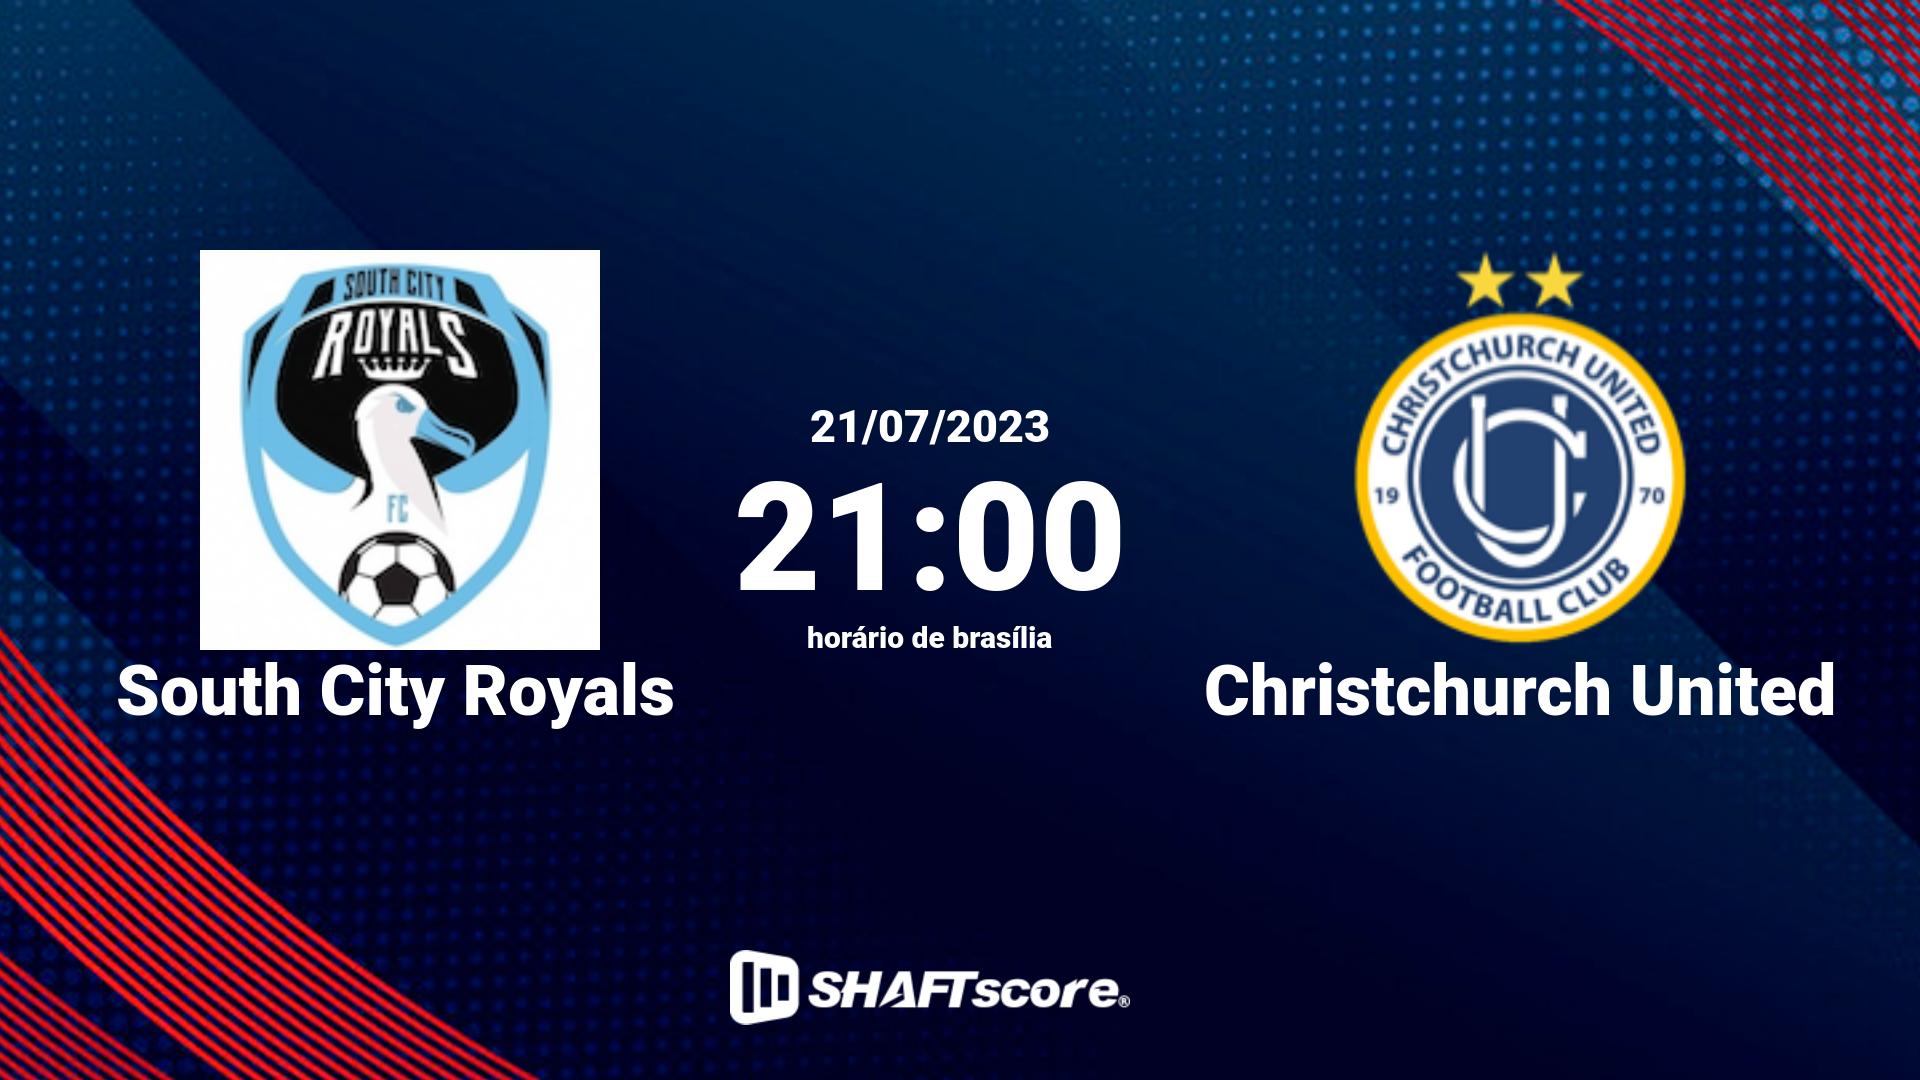 Estatísticas do jogo South City Royals vs Christchurch United 21.07 21:00